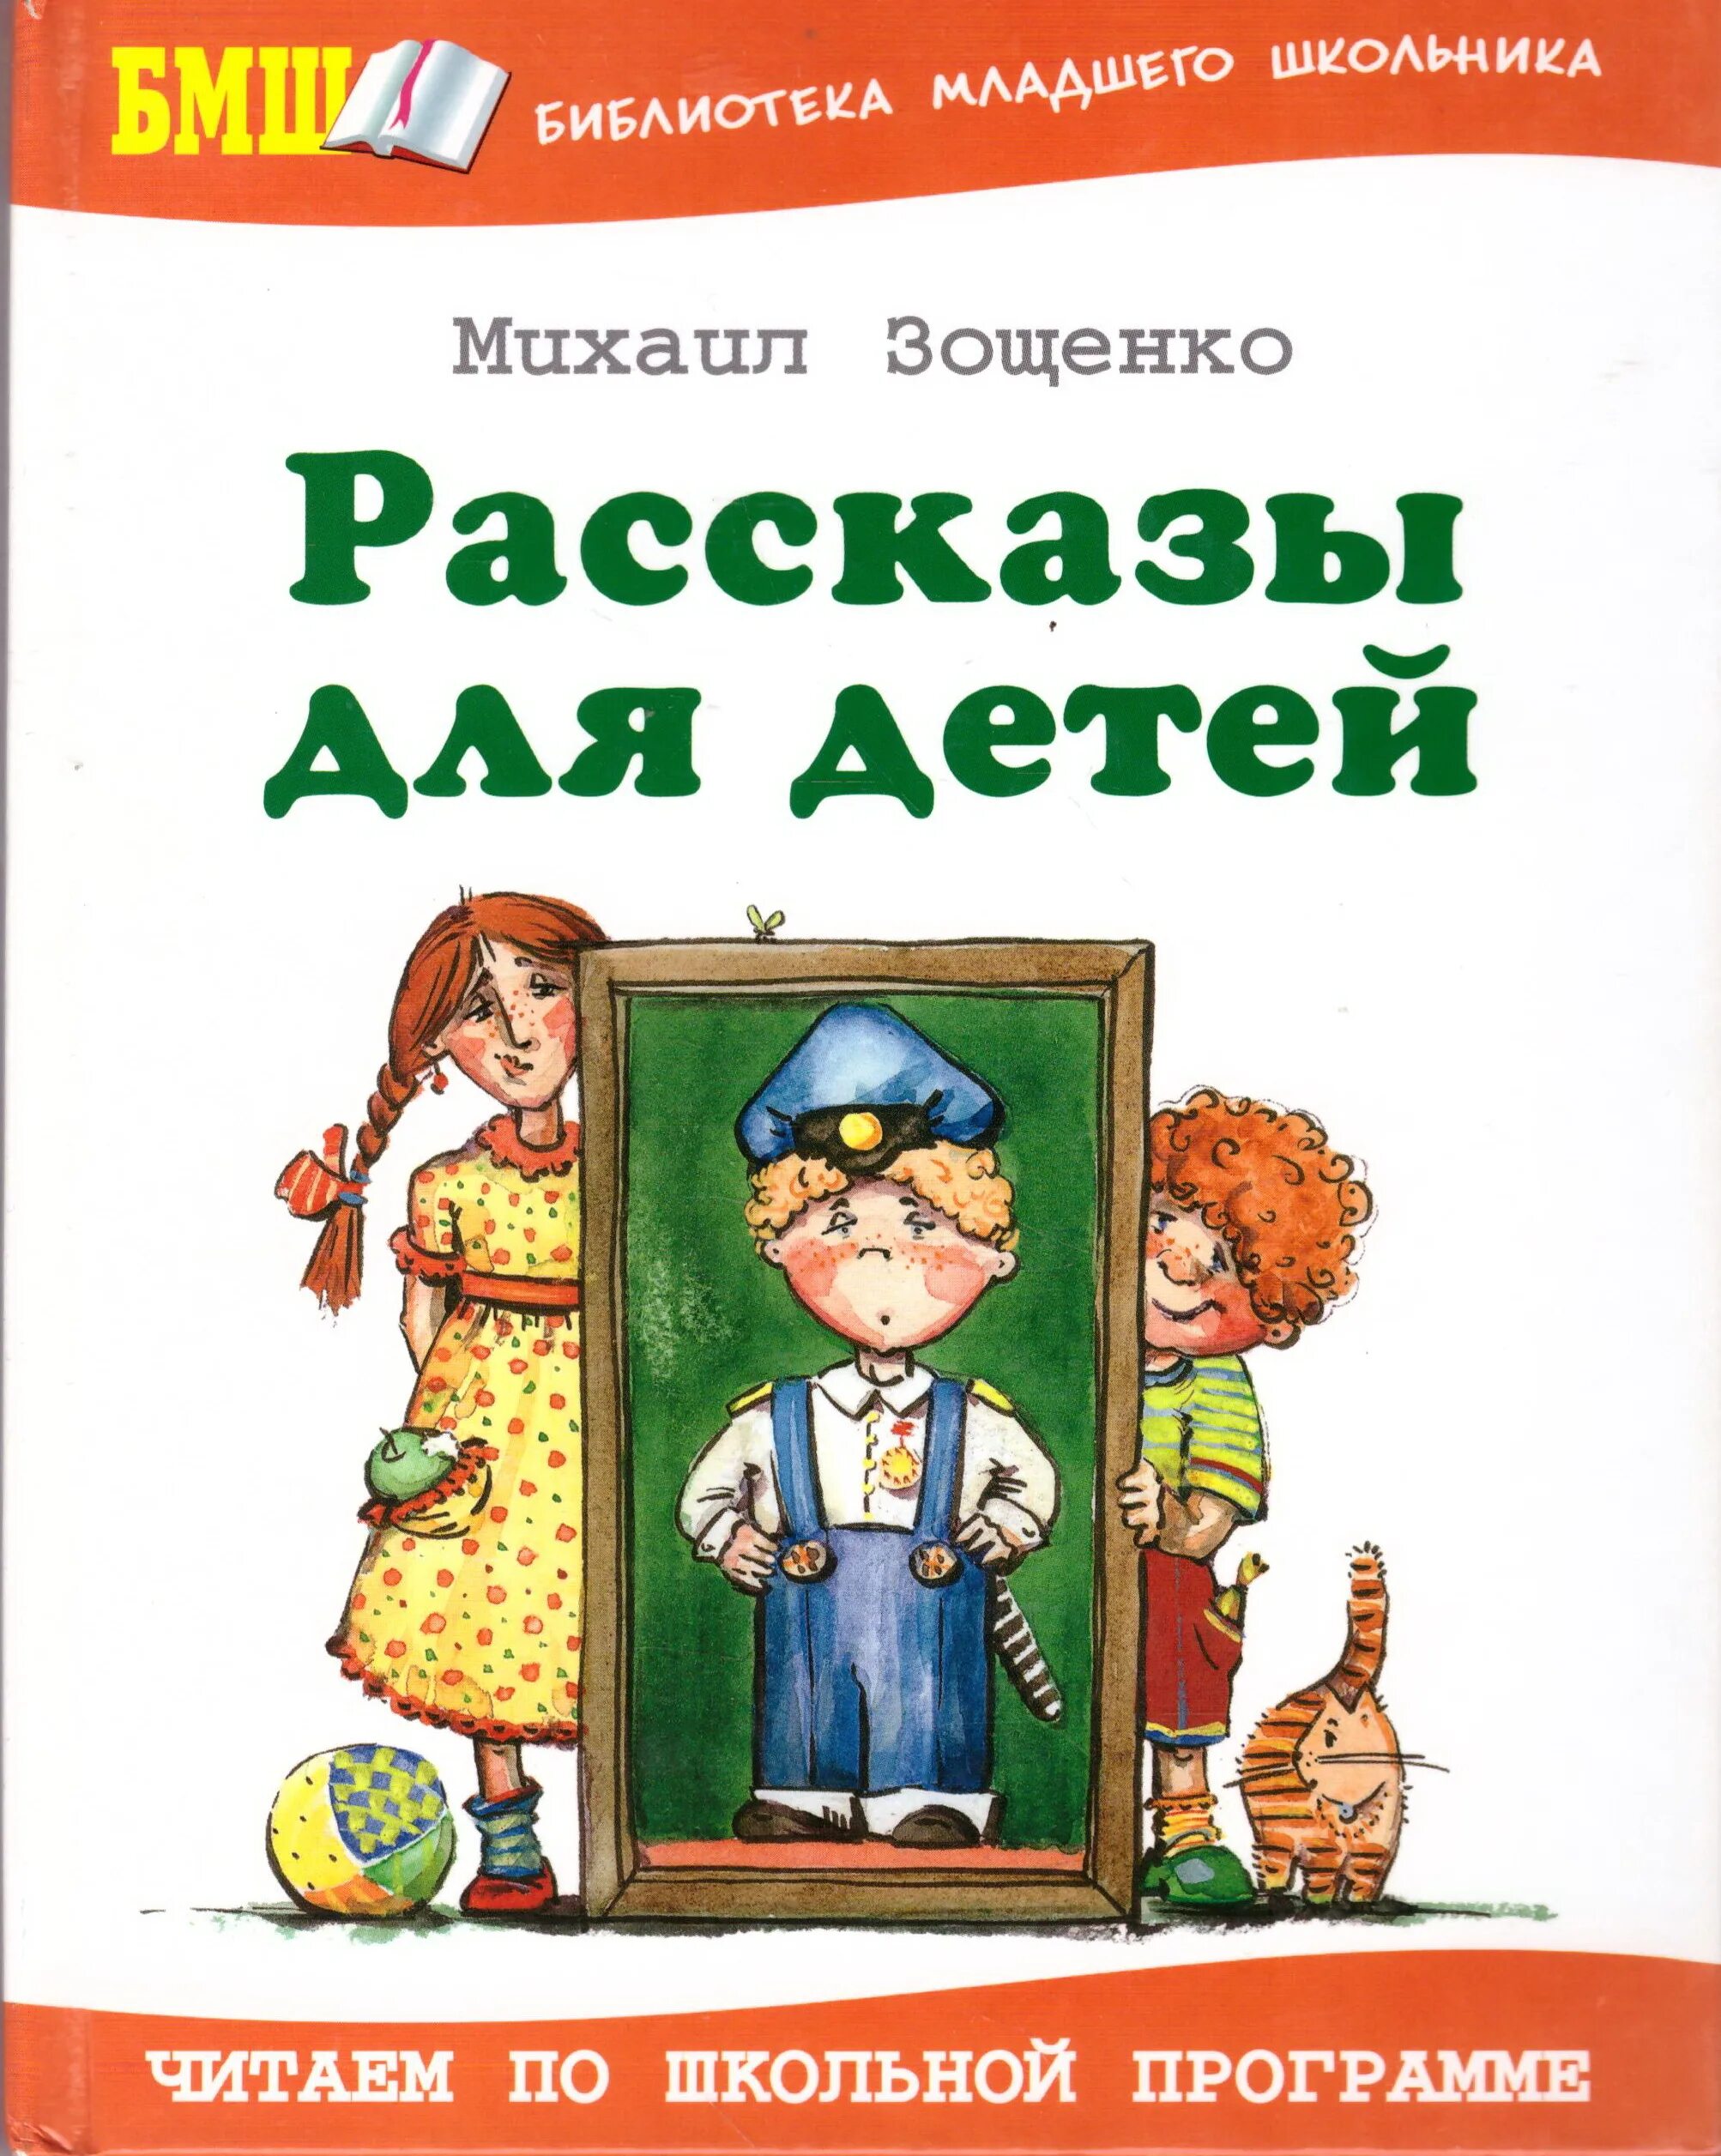 1 произведение зощенко. Книга Зощенко рассказы для детей.